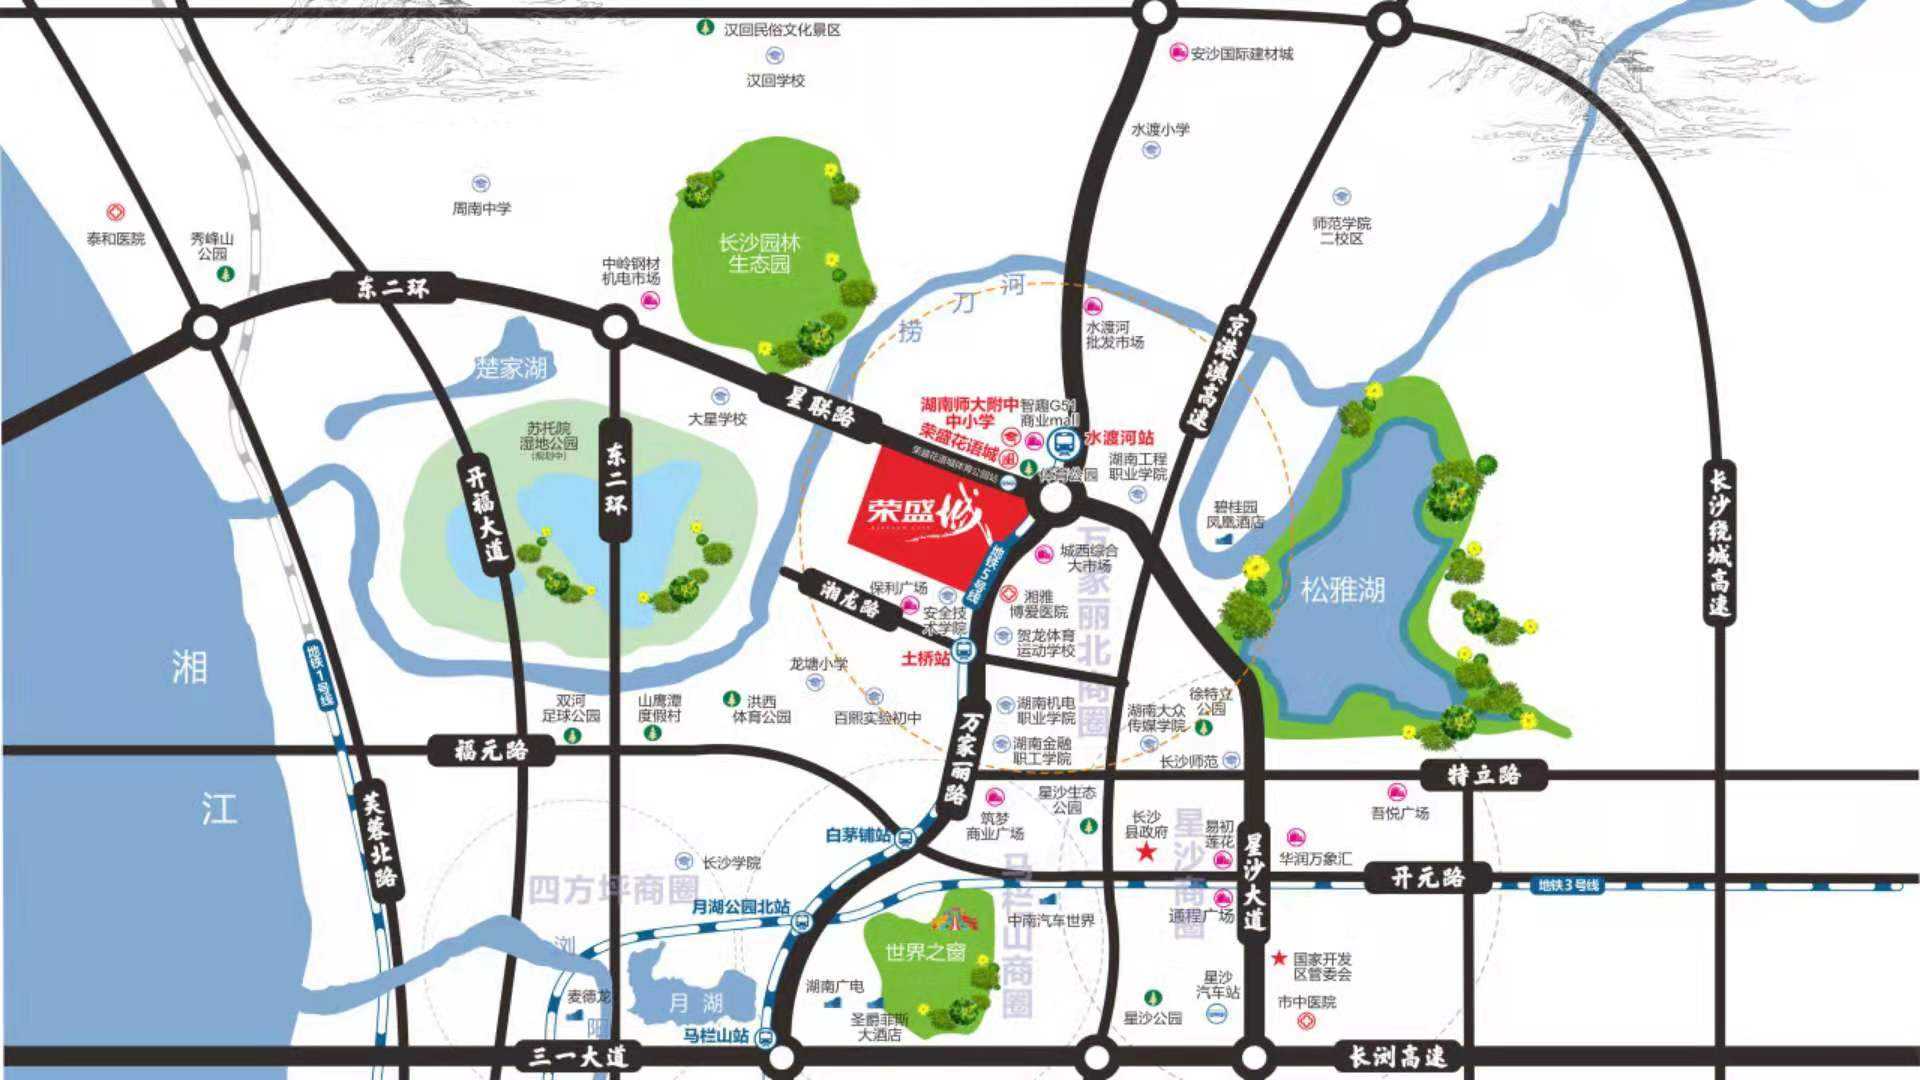 荣盛城规划图2